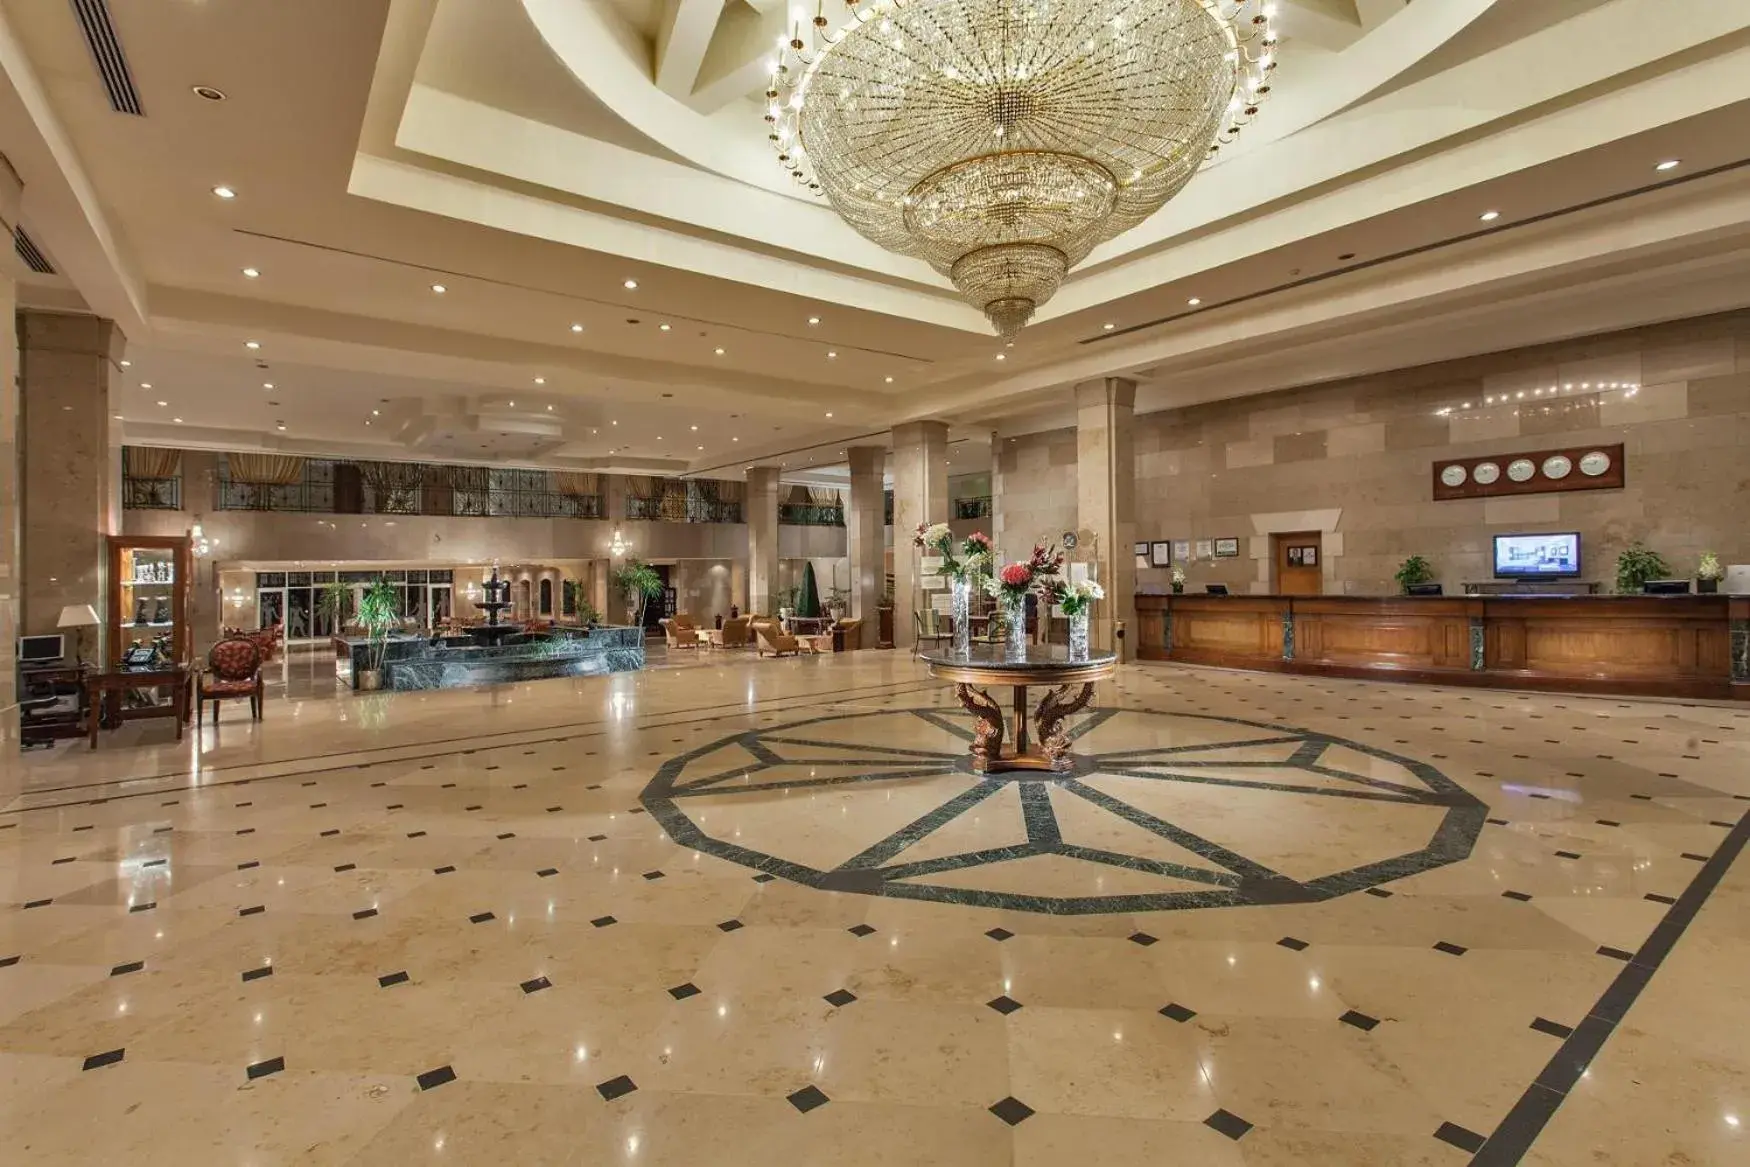 Lobby or reception, Lobby/Reception in Jolie Ville Golf & Resort